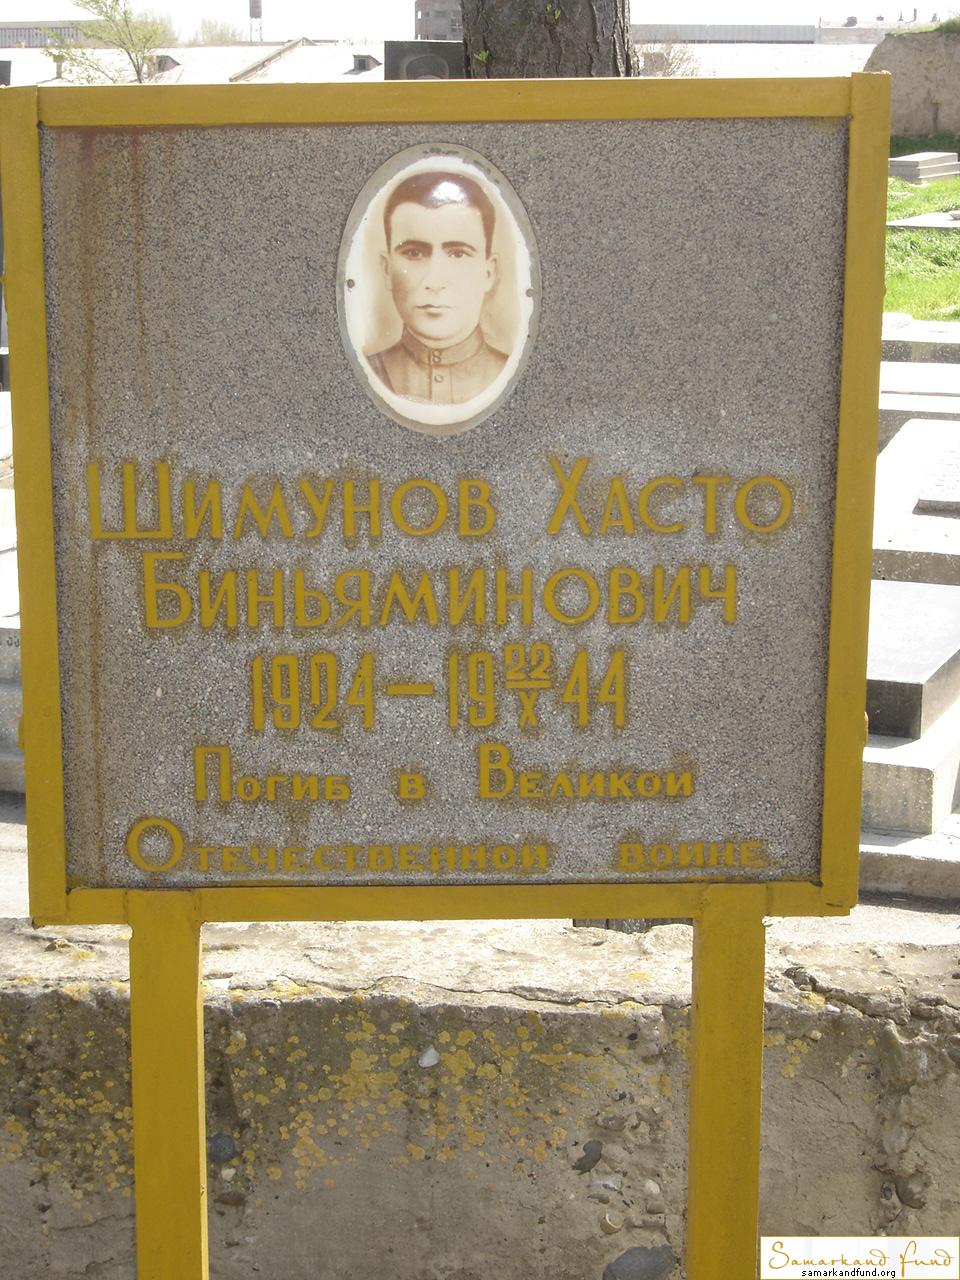 Шимунов Хасто Биньяминович  1924 - 22.10.1944  № 17.JPG